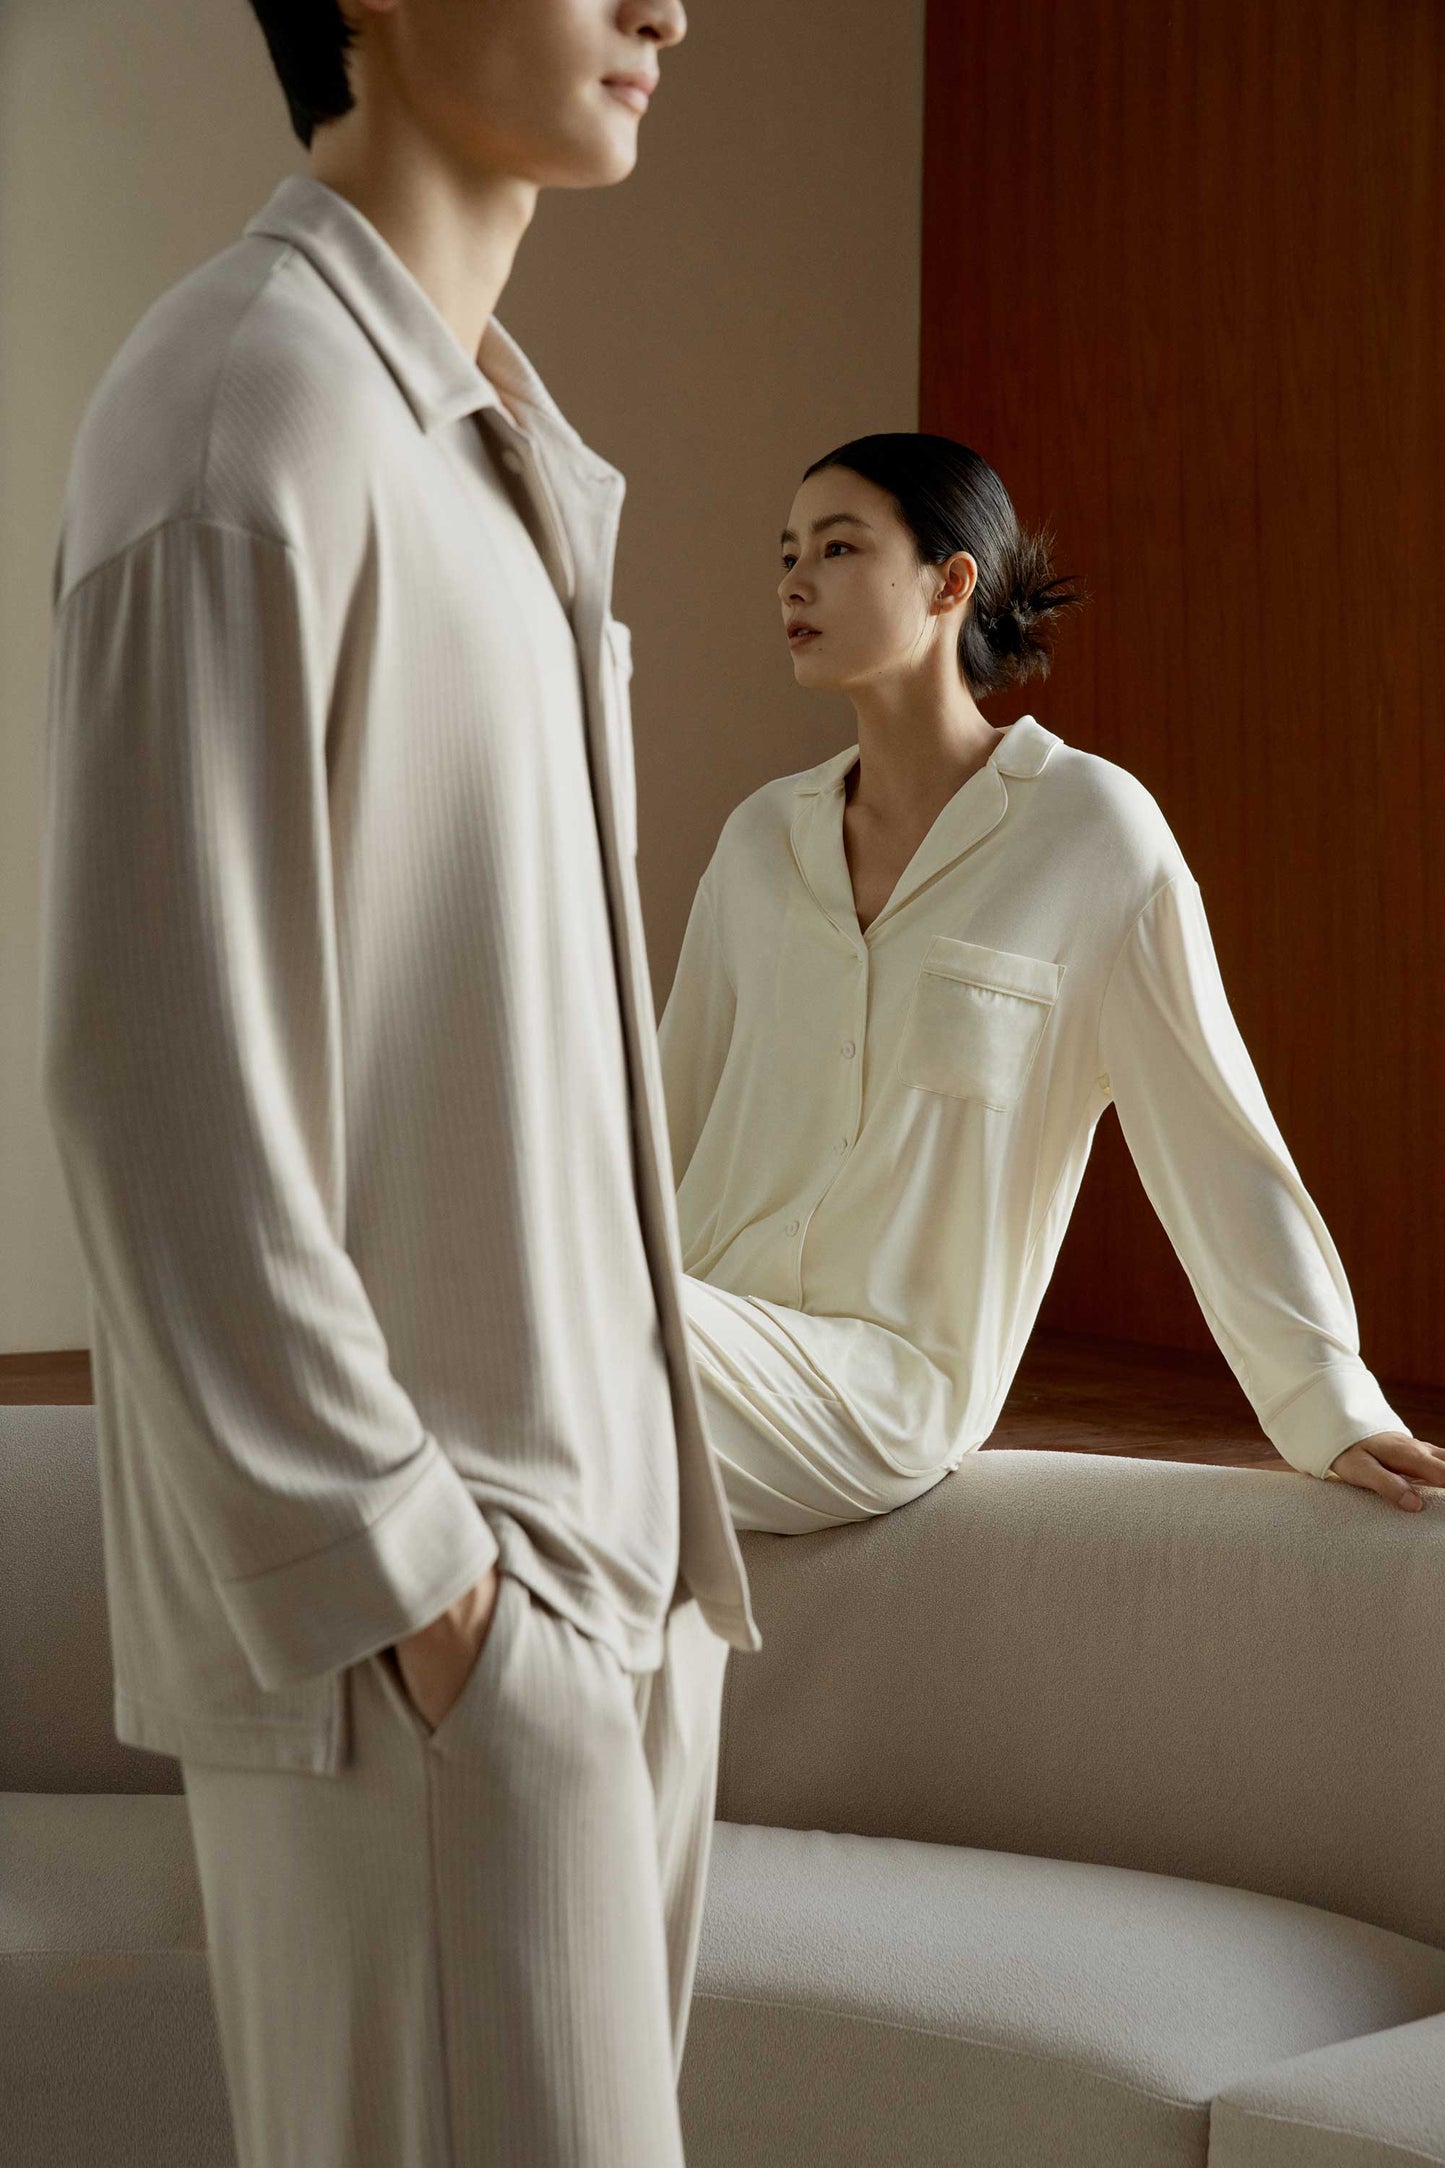 Silk Modal Pajama Top